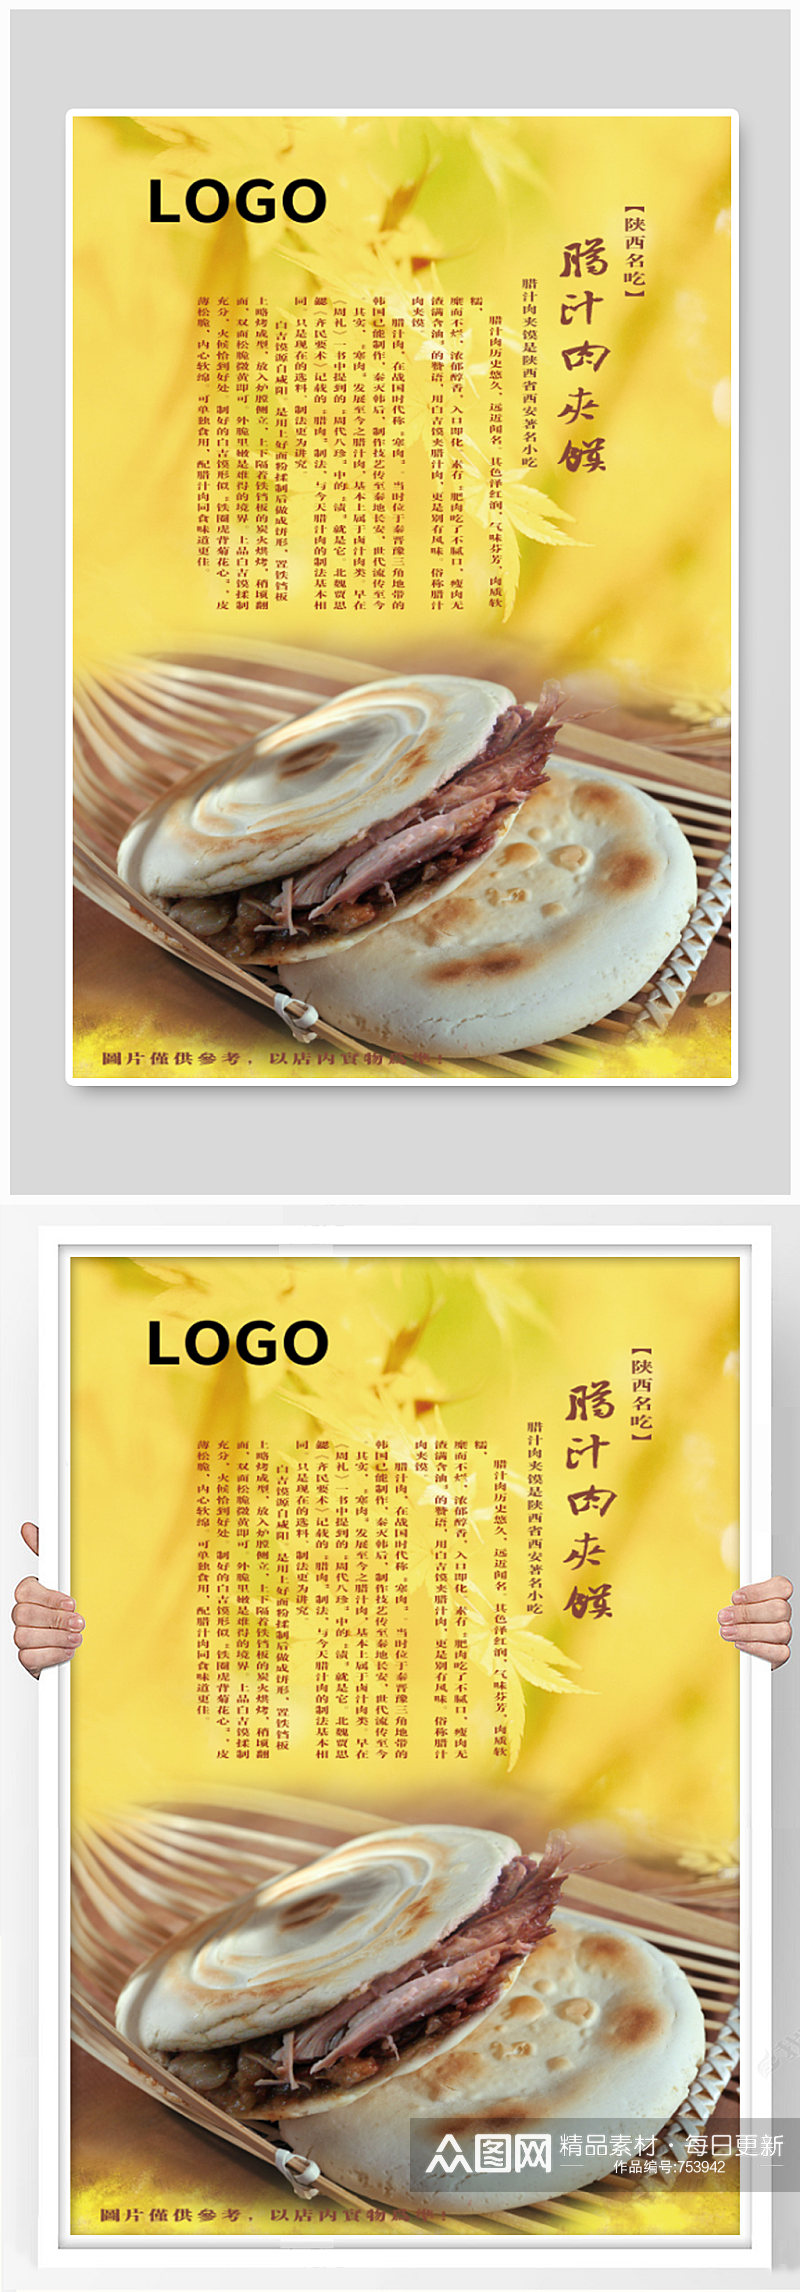 肉夹馍美食海报设计素材